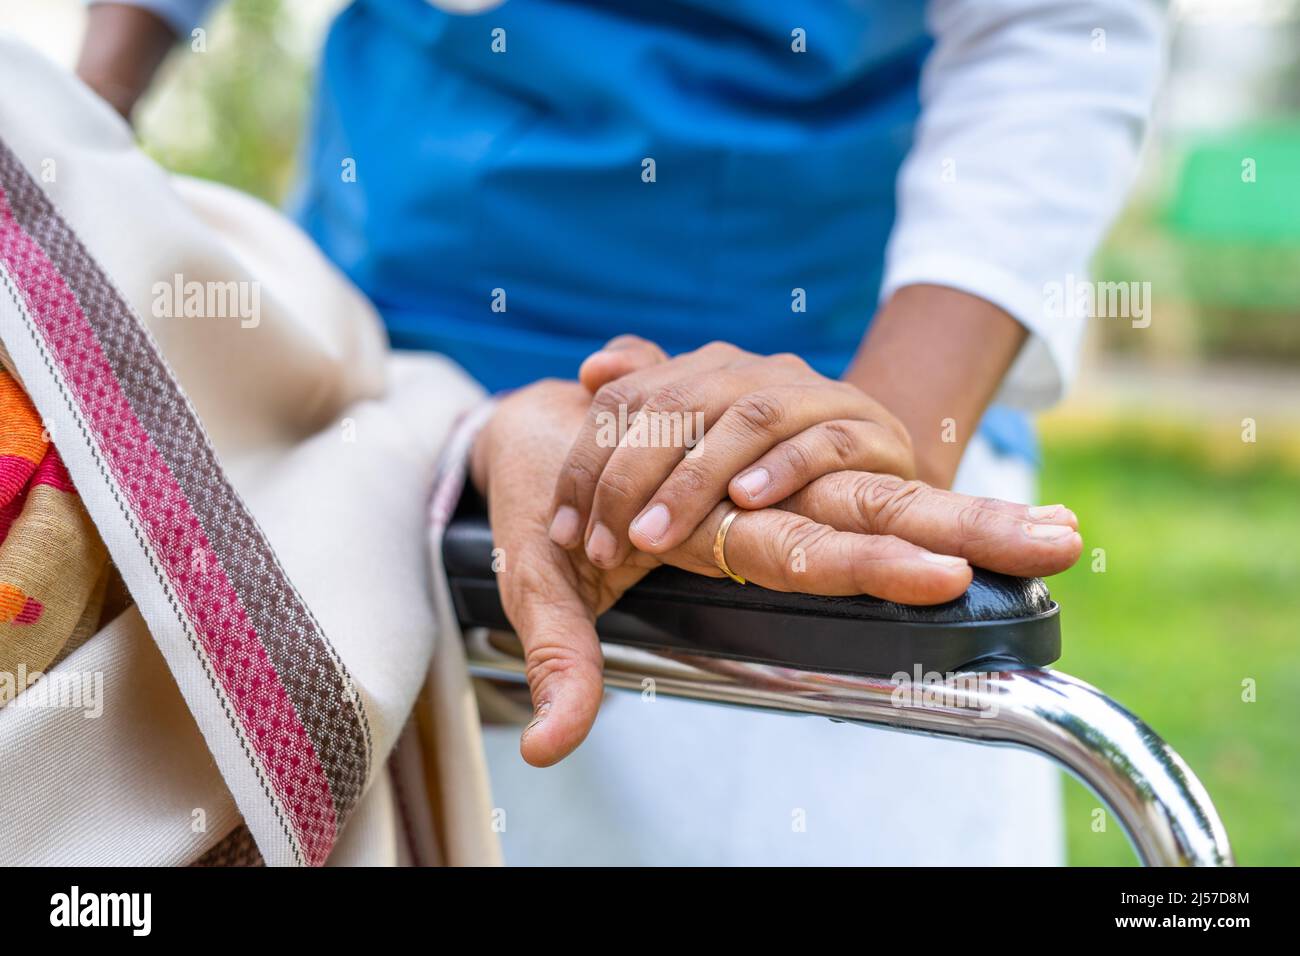 Nahaufnahme der Hände des Arztes, die die eldery trösten, indem sie die Hand am Rollstuhl halten - Konzept von Mitgefühl, Empathie und Fürsorger. Stockfoto